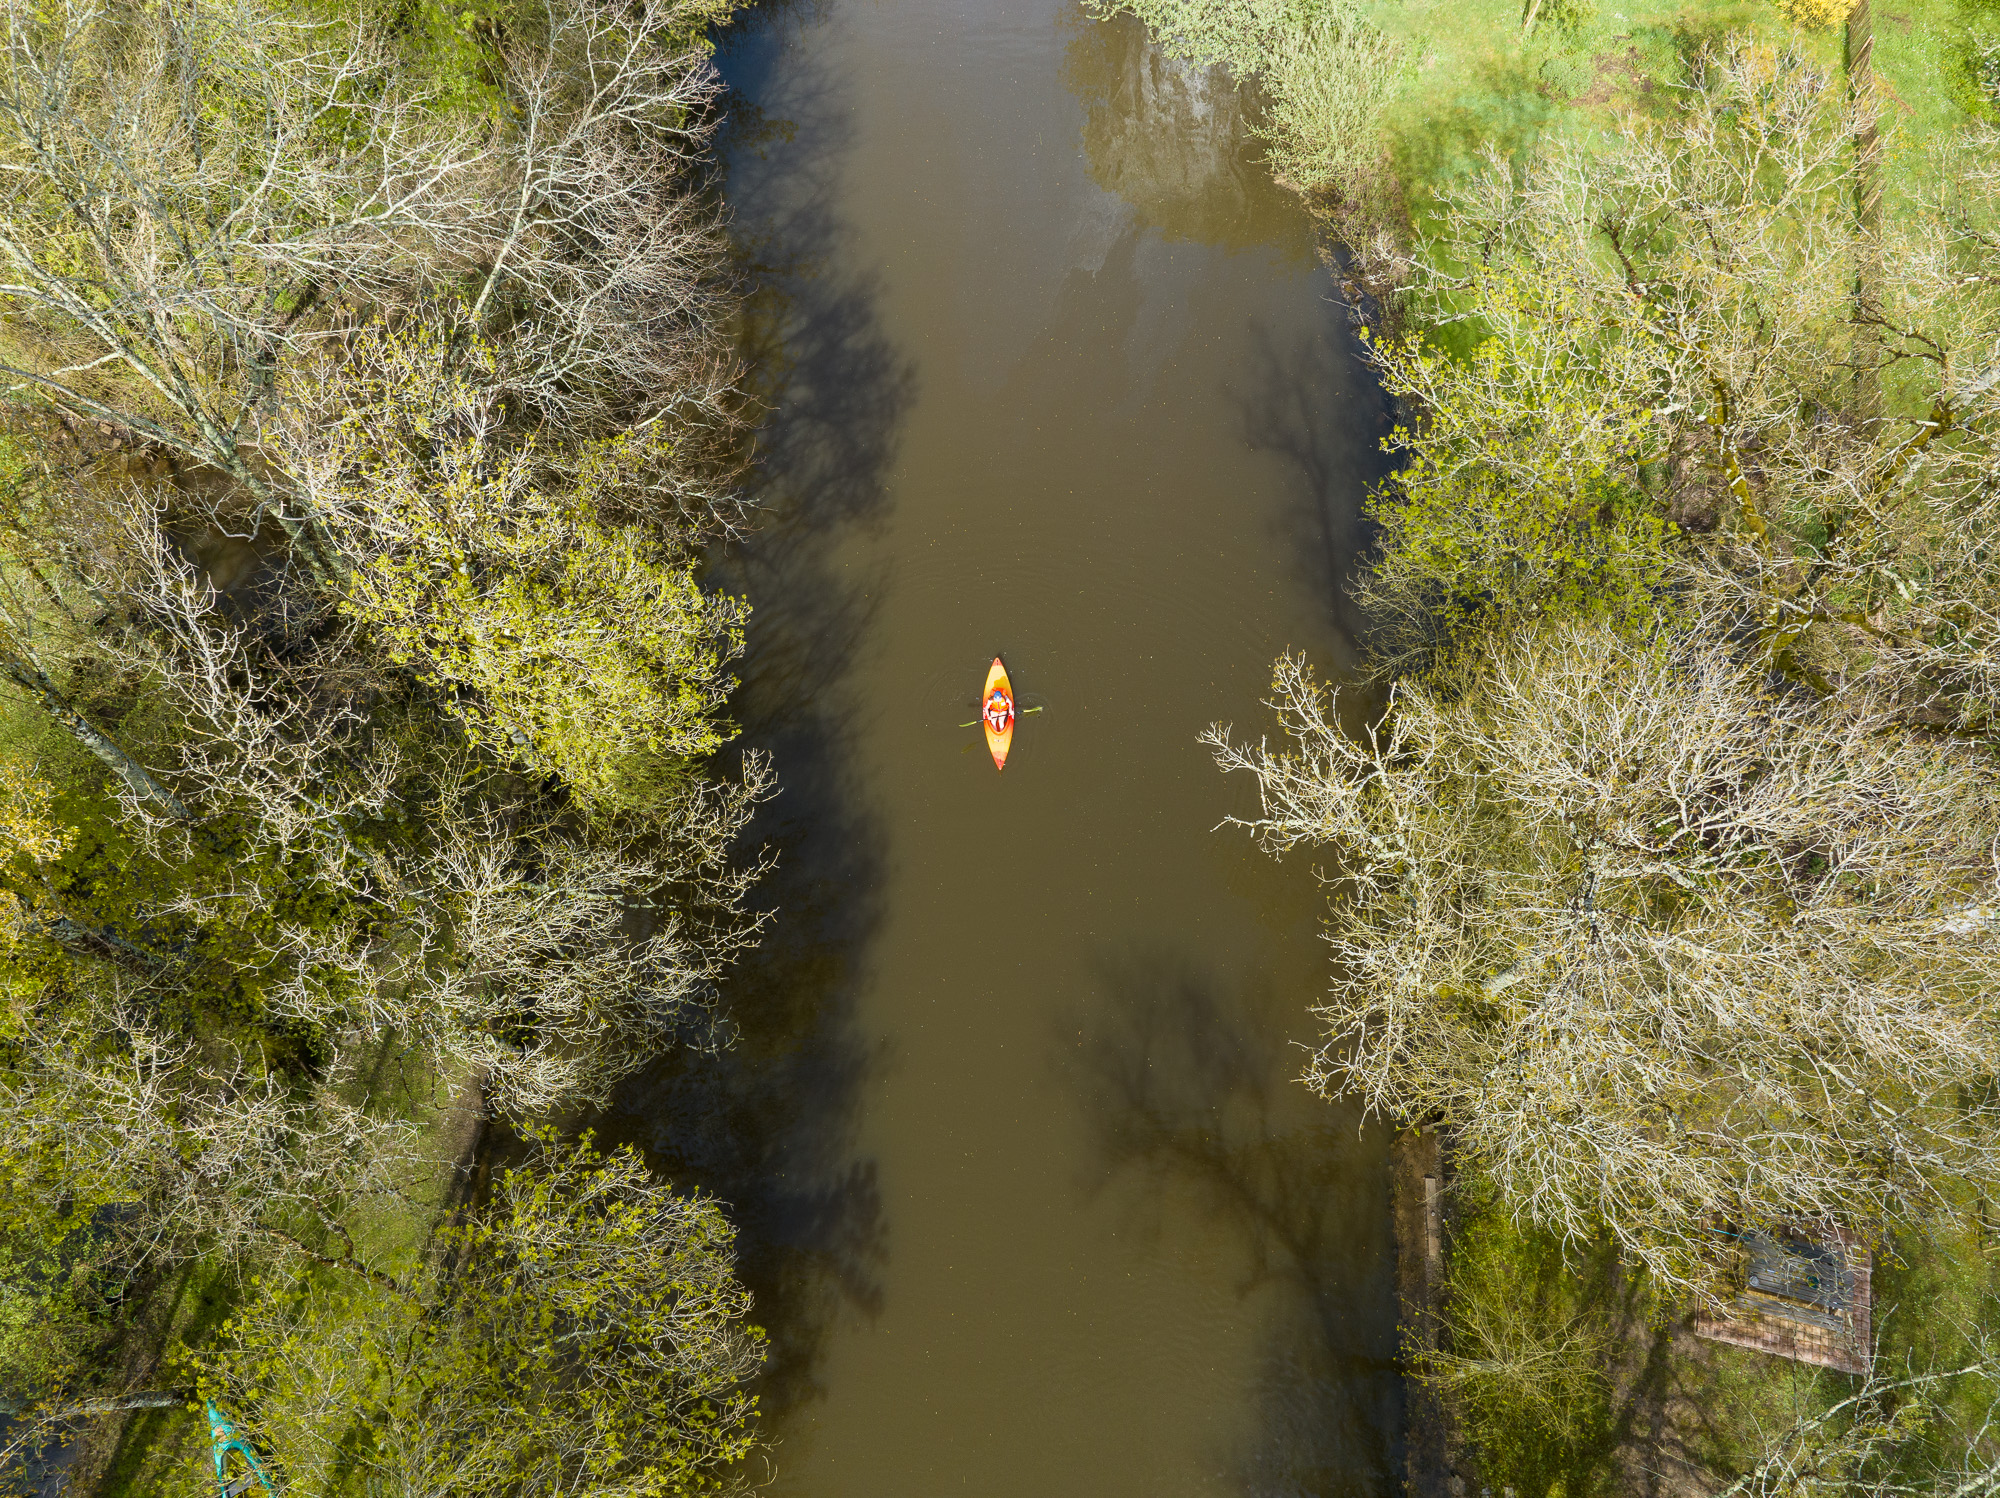 canoe vue drone du dessus